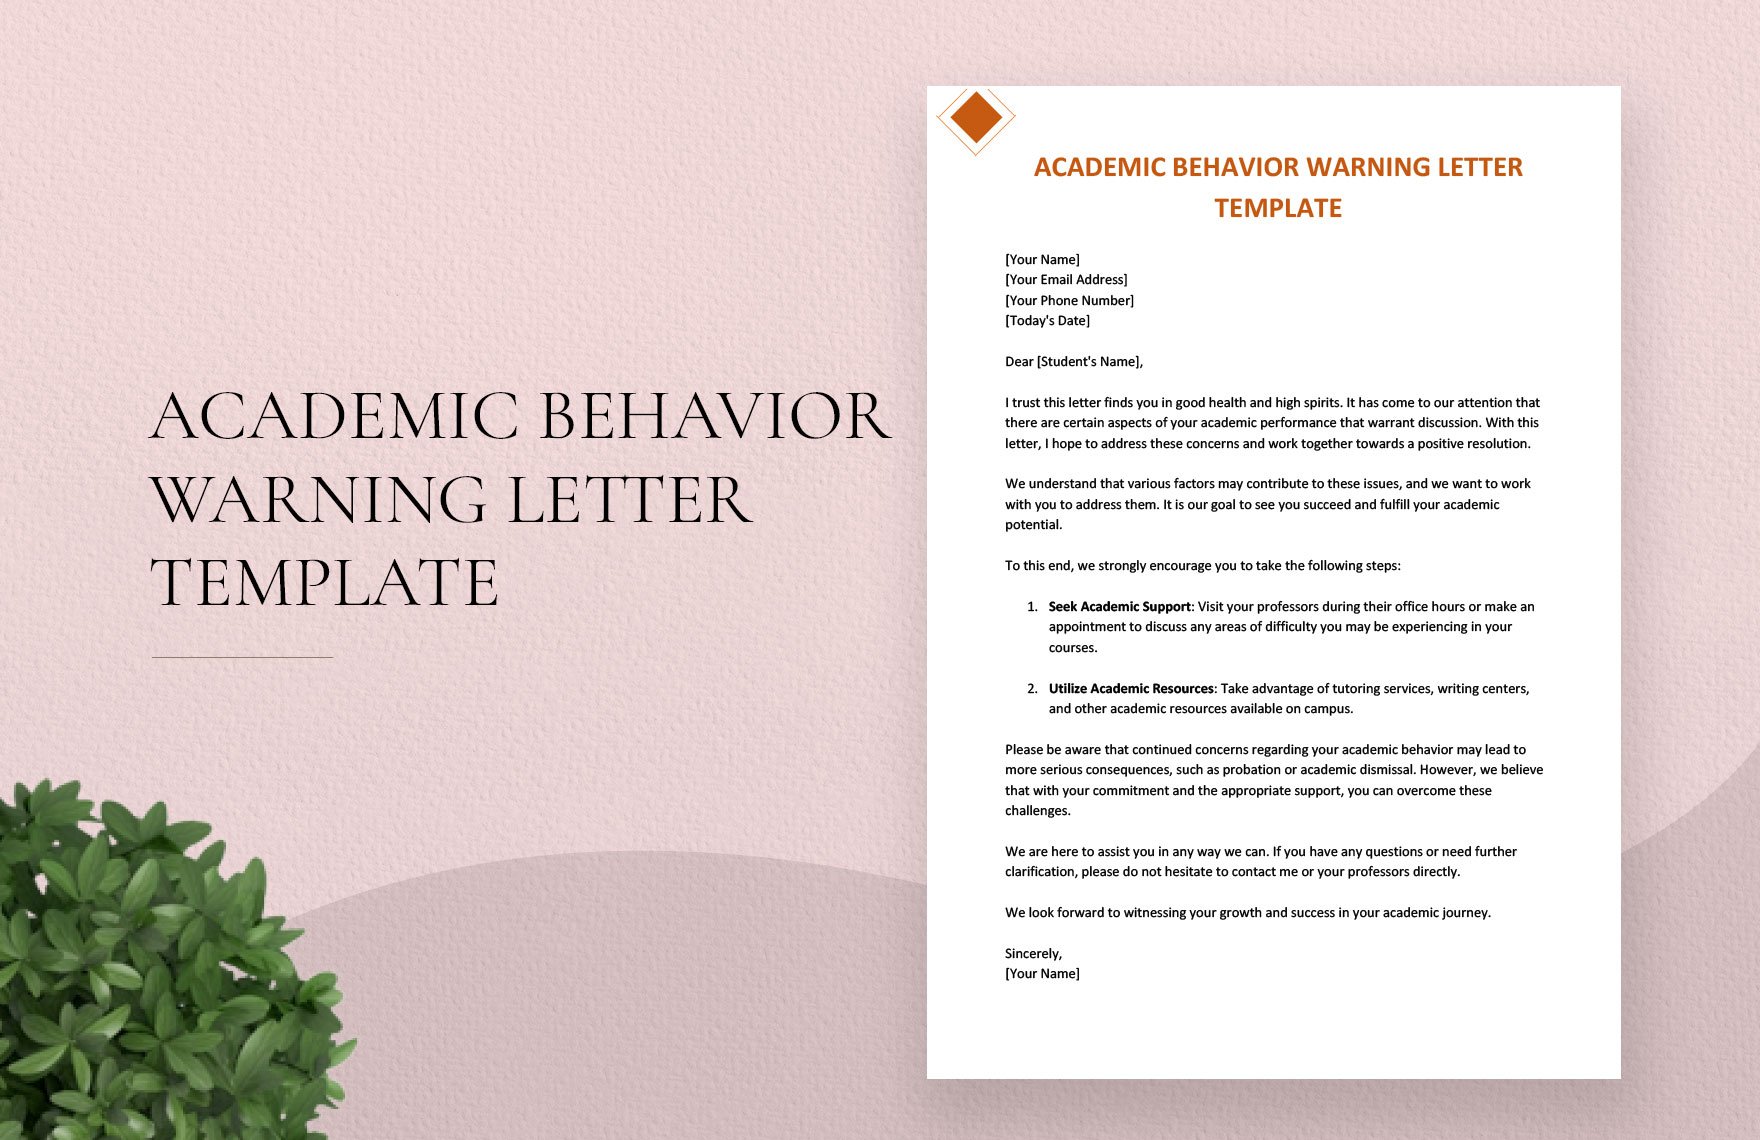 Academic Behavior Warning Letter Template